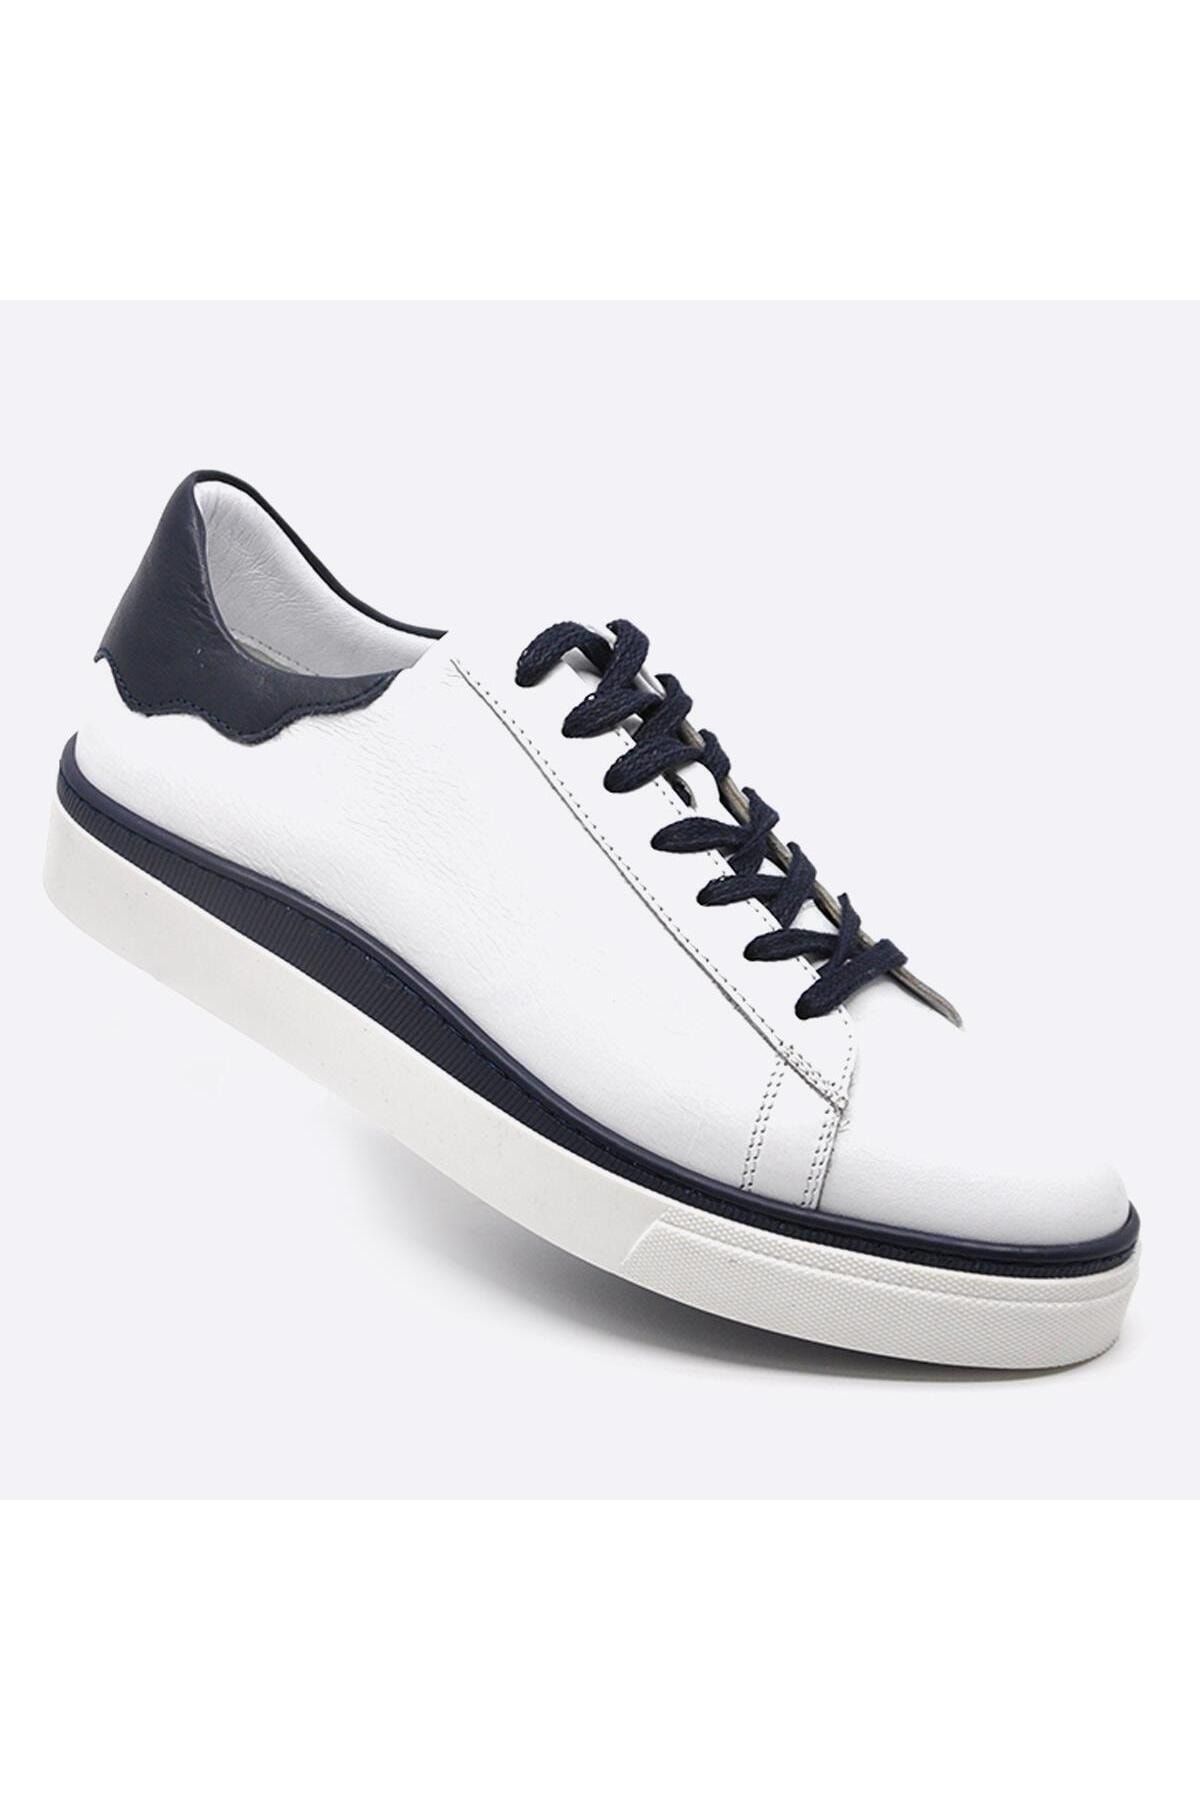 Fosco Hakiki Deri Sneakers Erkek Ayakkabı Beyaz 9842